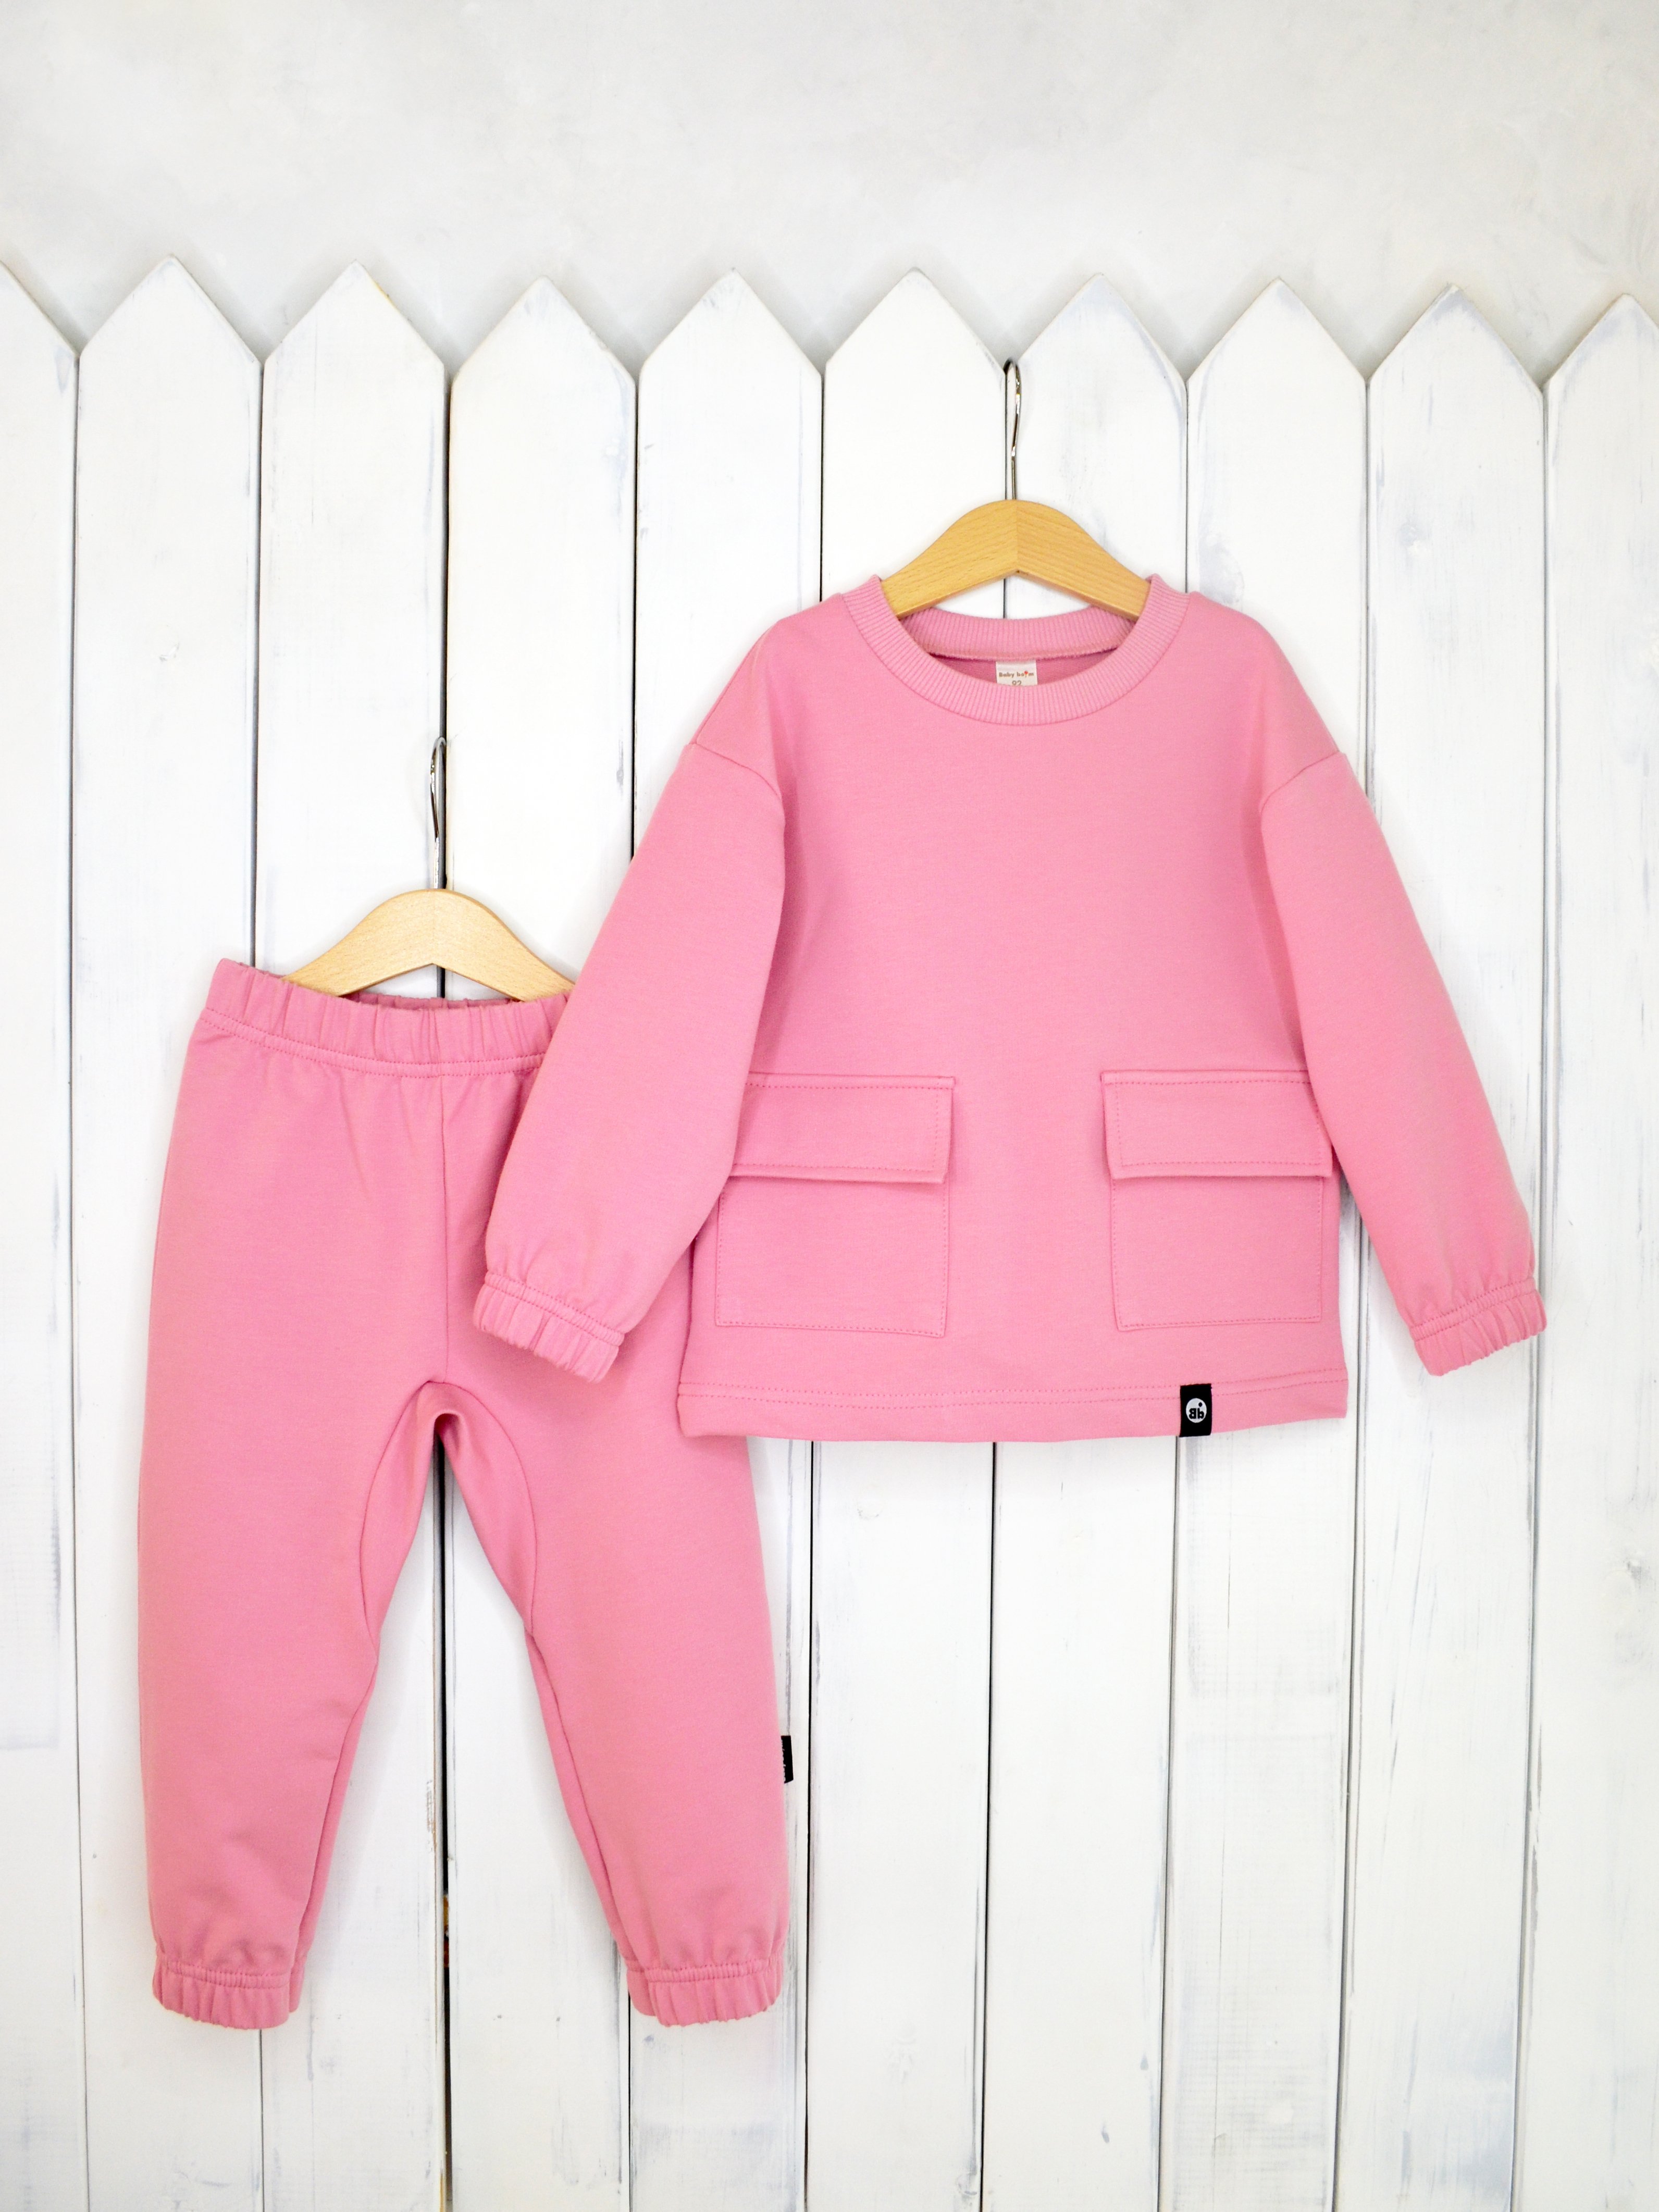 КД326/3-Ф Комплект детский джемпер+брюки цвет: розовый зефир р.92 Бэби Бум - Йошкар-Ола 